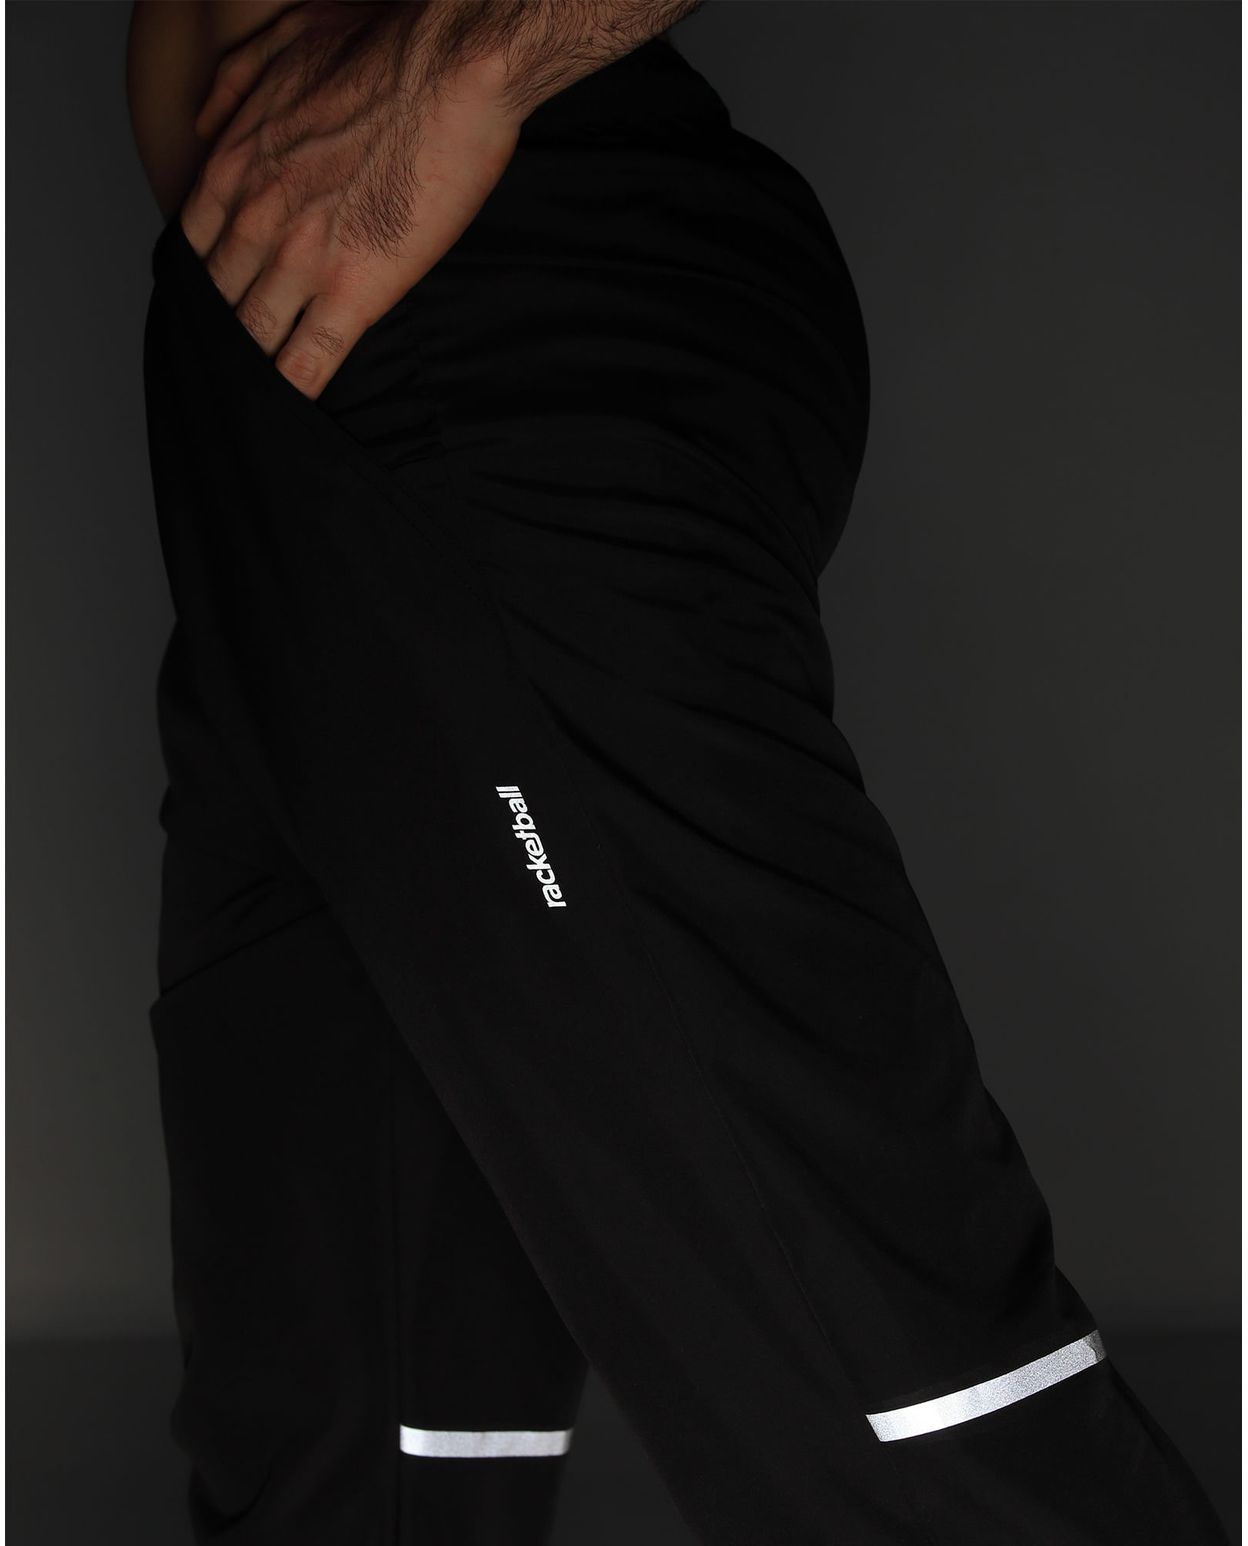 Pantalón Deportivo Semi Ajustado Negro para Hombre parte lateral izquierda con logo racketball